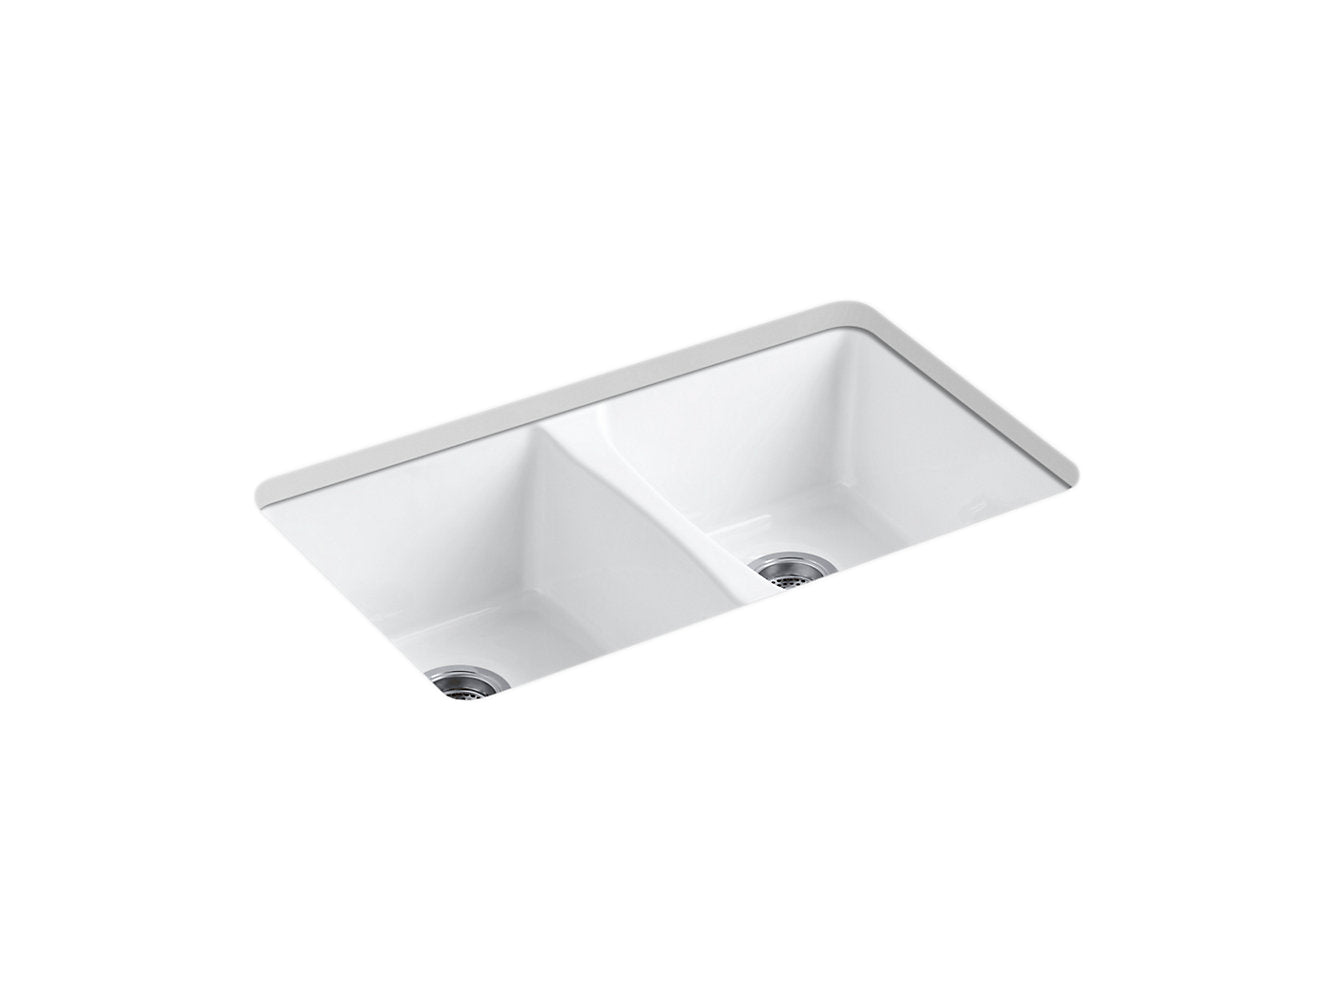 Kohler Deerfield 33" x 22" x 9-5/8" Undermount Double Equal Kitchen Sink - White